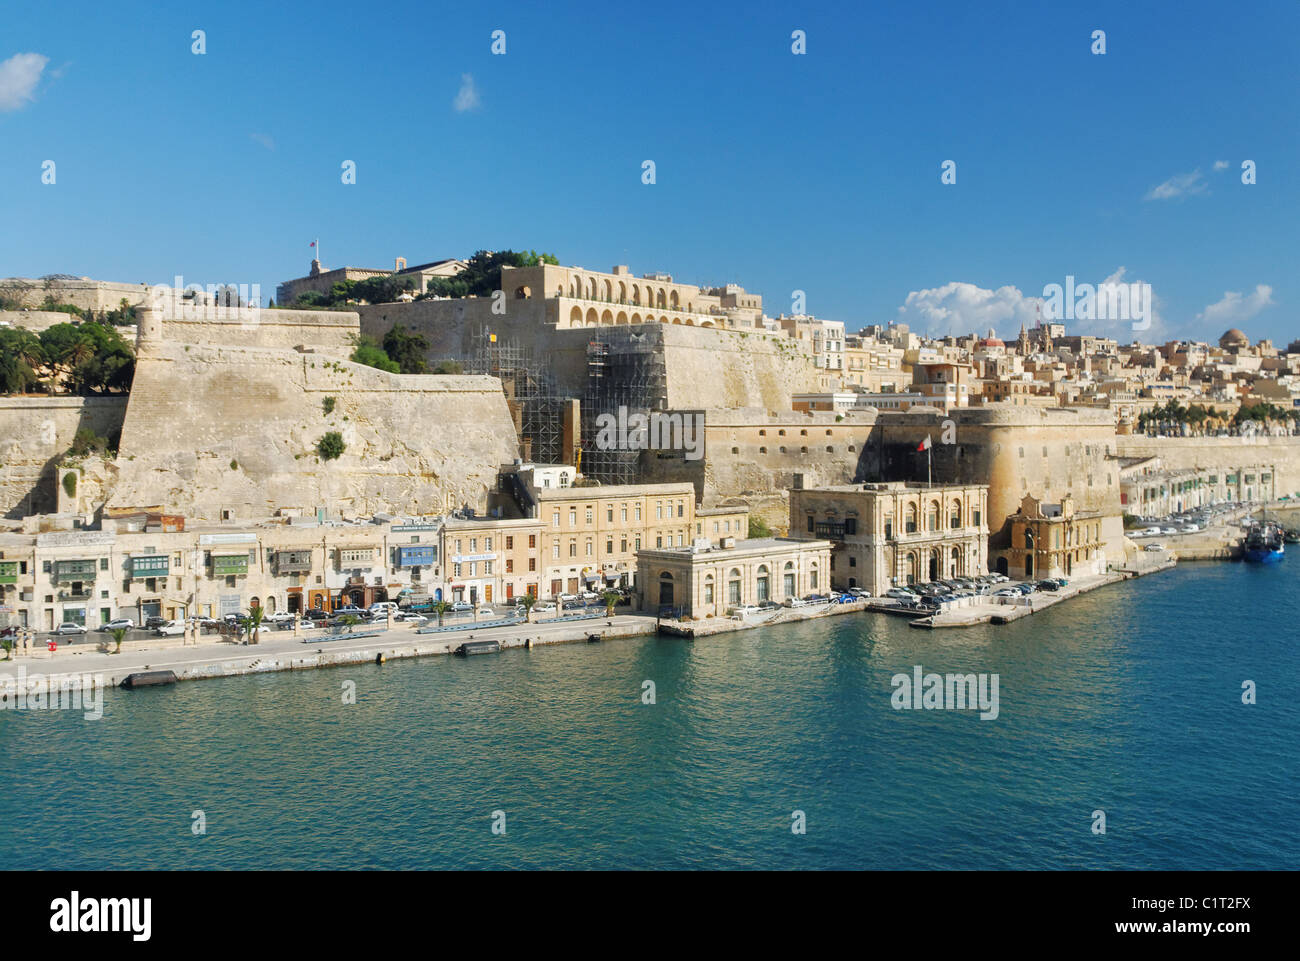 Valletta from the Air, Malta Stock Photo